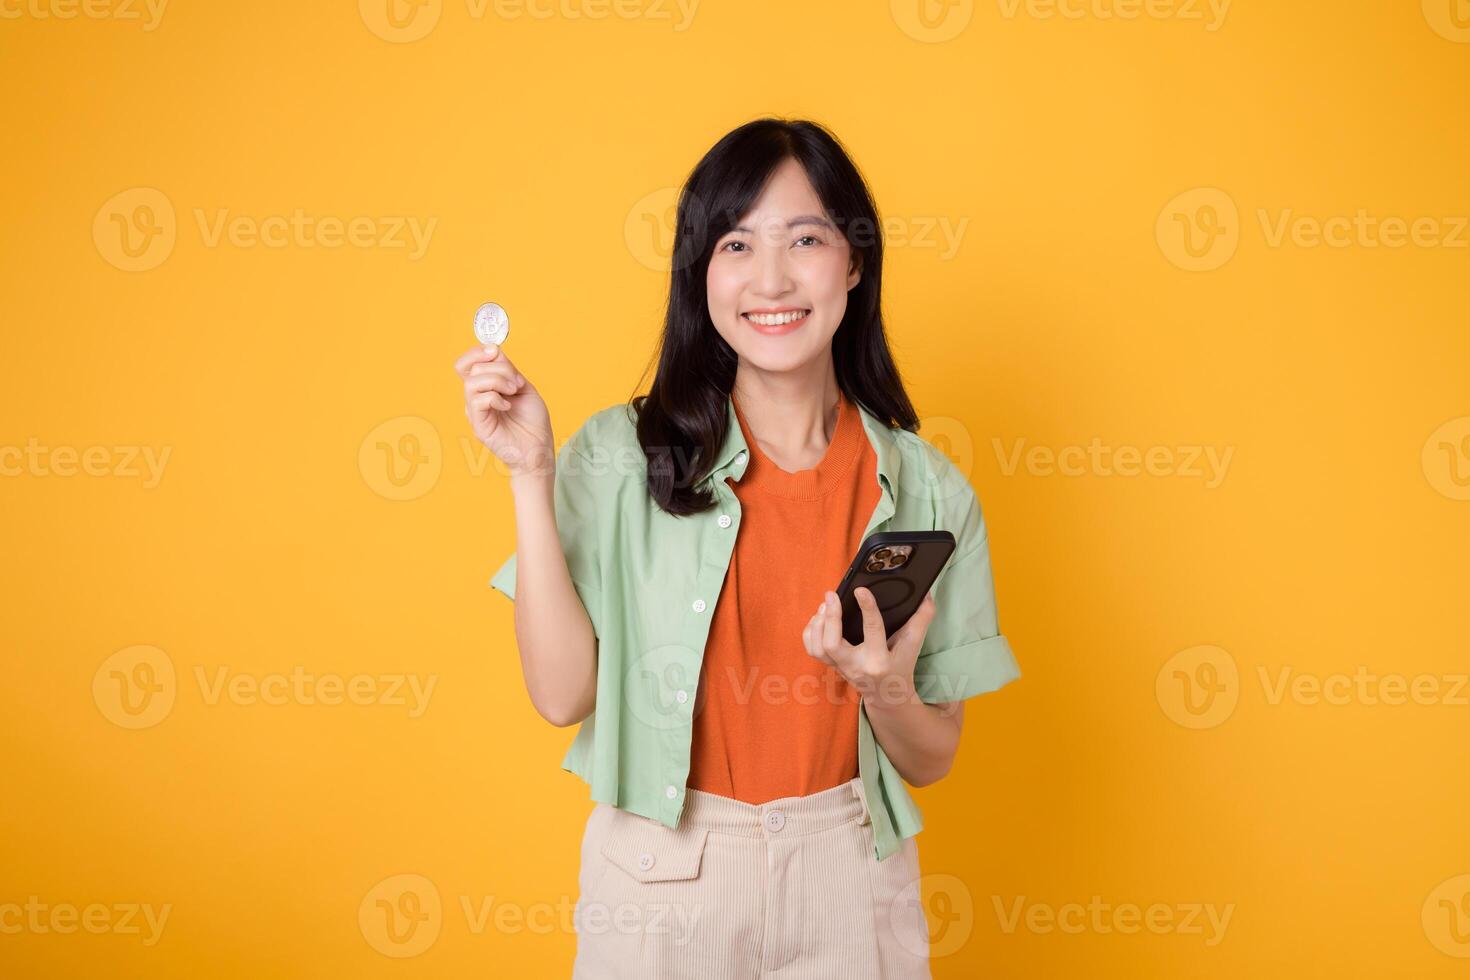 framtida av finansiera med en glad ung asiatisk kvinna 30-talet, påklädning orange skjorta och grön hoppare, visning crypto valuta mynt medan innehav smartphone på gul bakgrund. framtida finansiera begrepp. foto